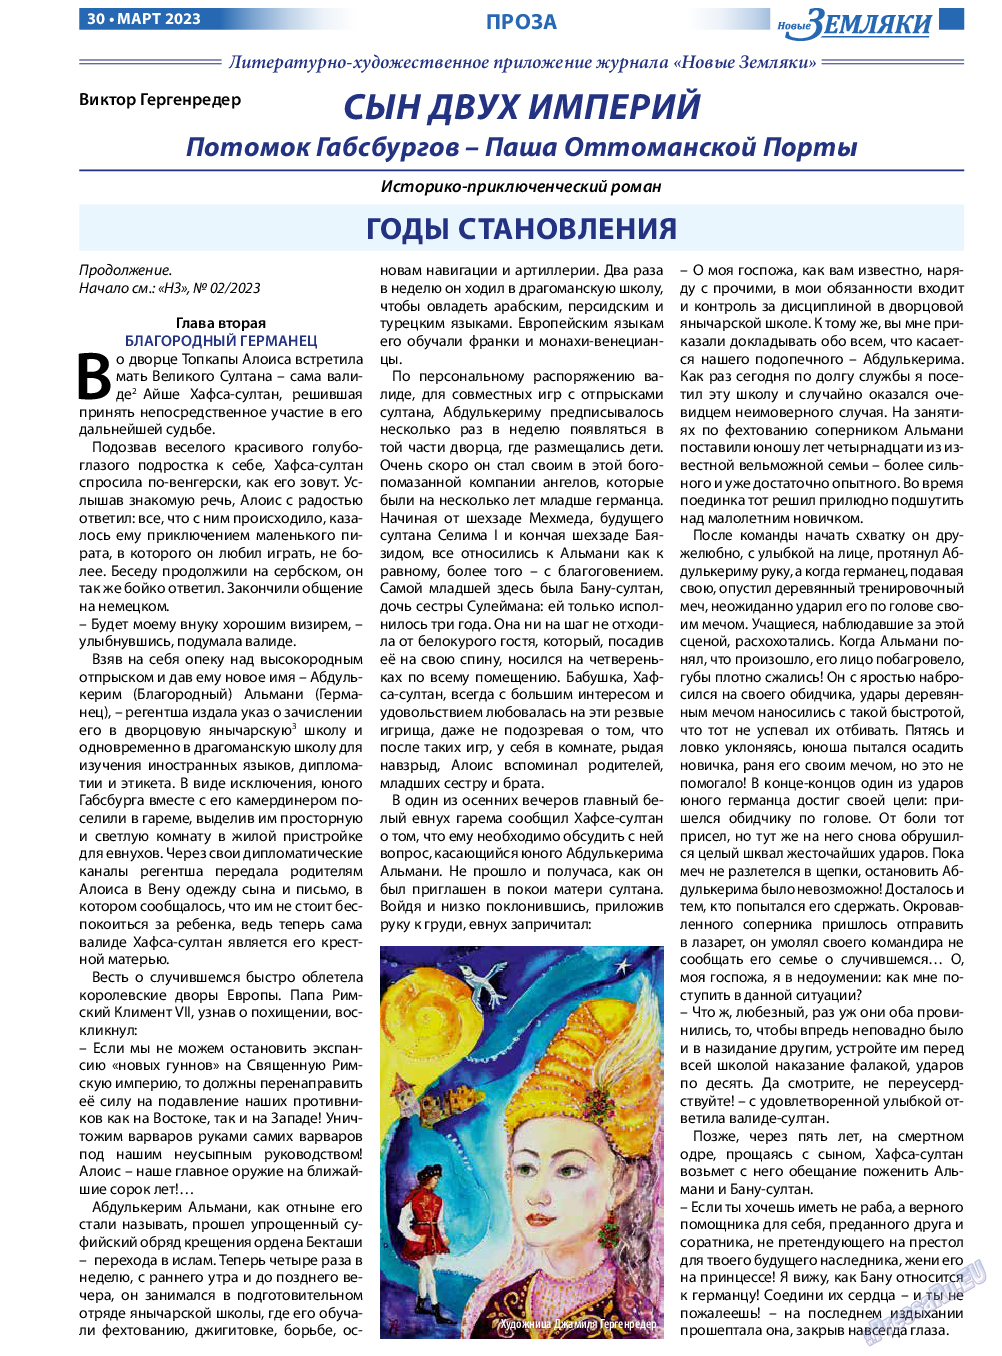 Новые Земляки, газета. 2023 №3 стр.30